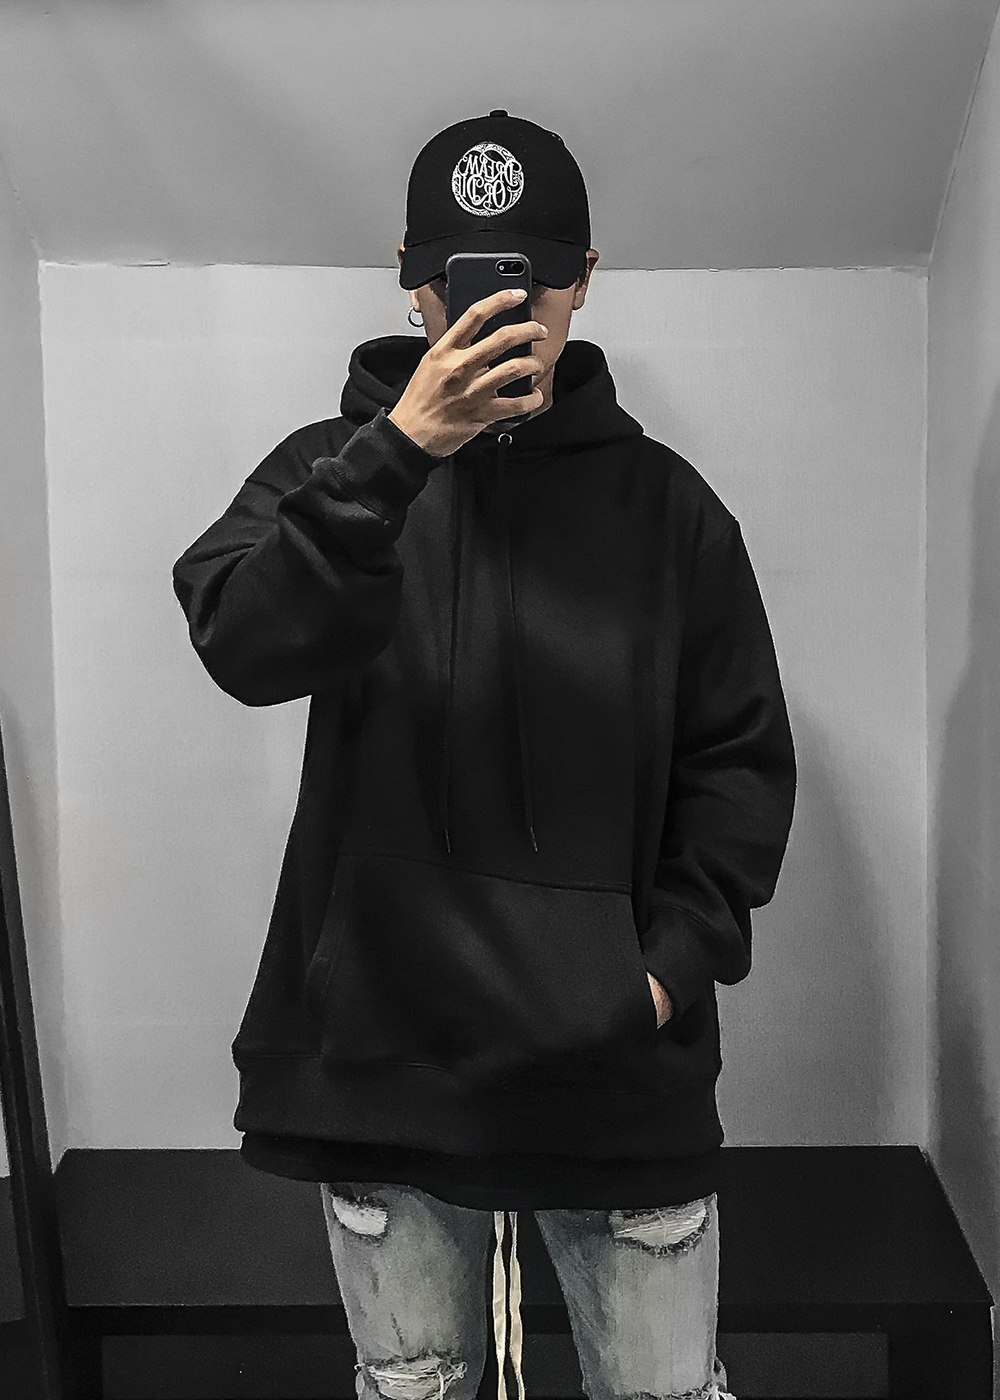 Basic Hoodie In Black